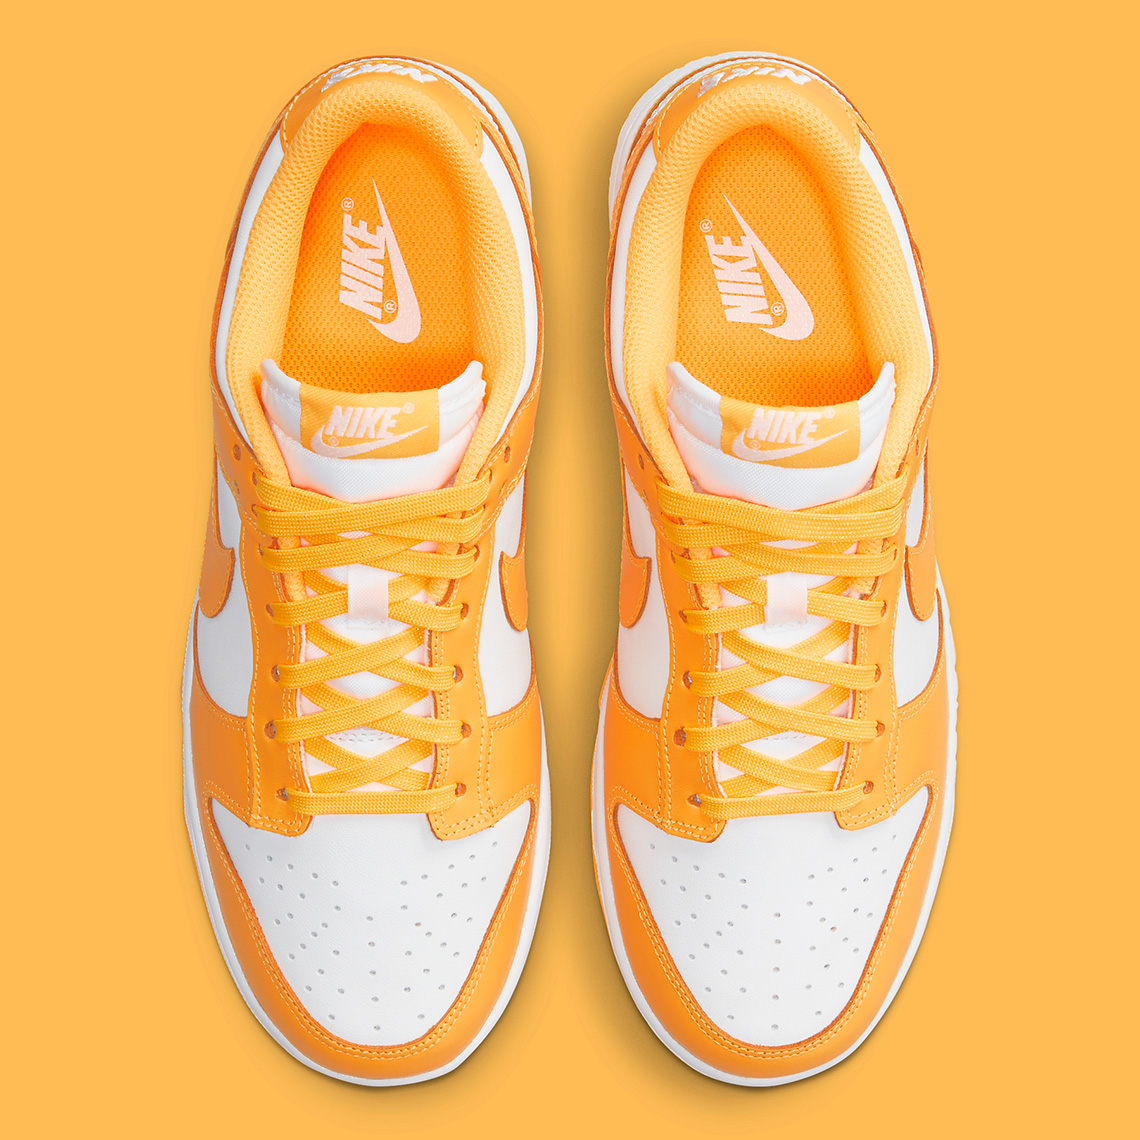 Nike's Dunk Low "Laser Orange"